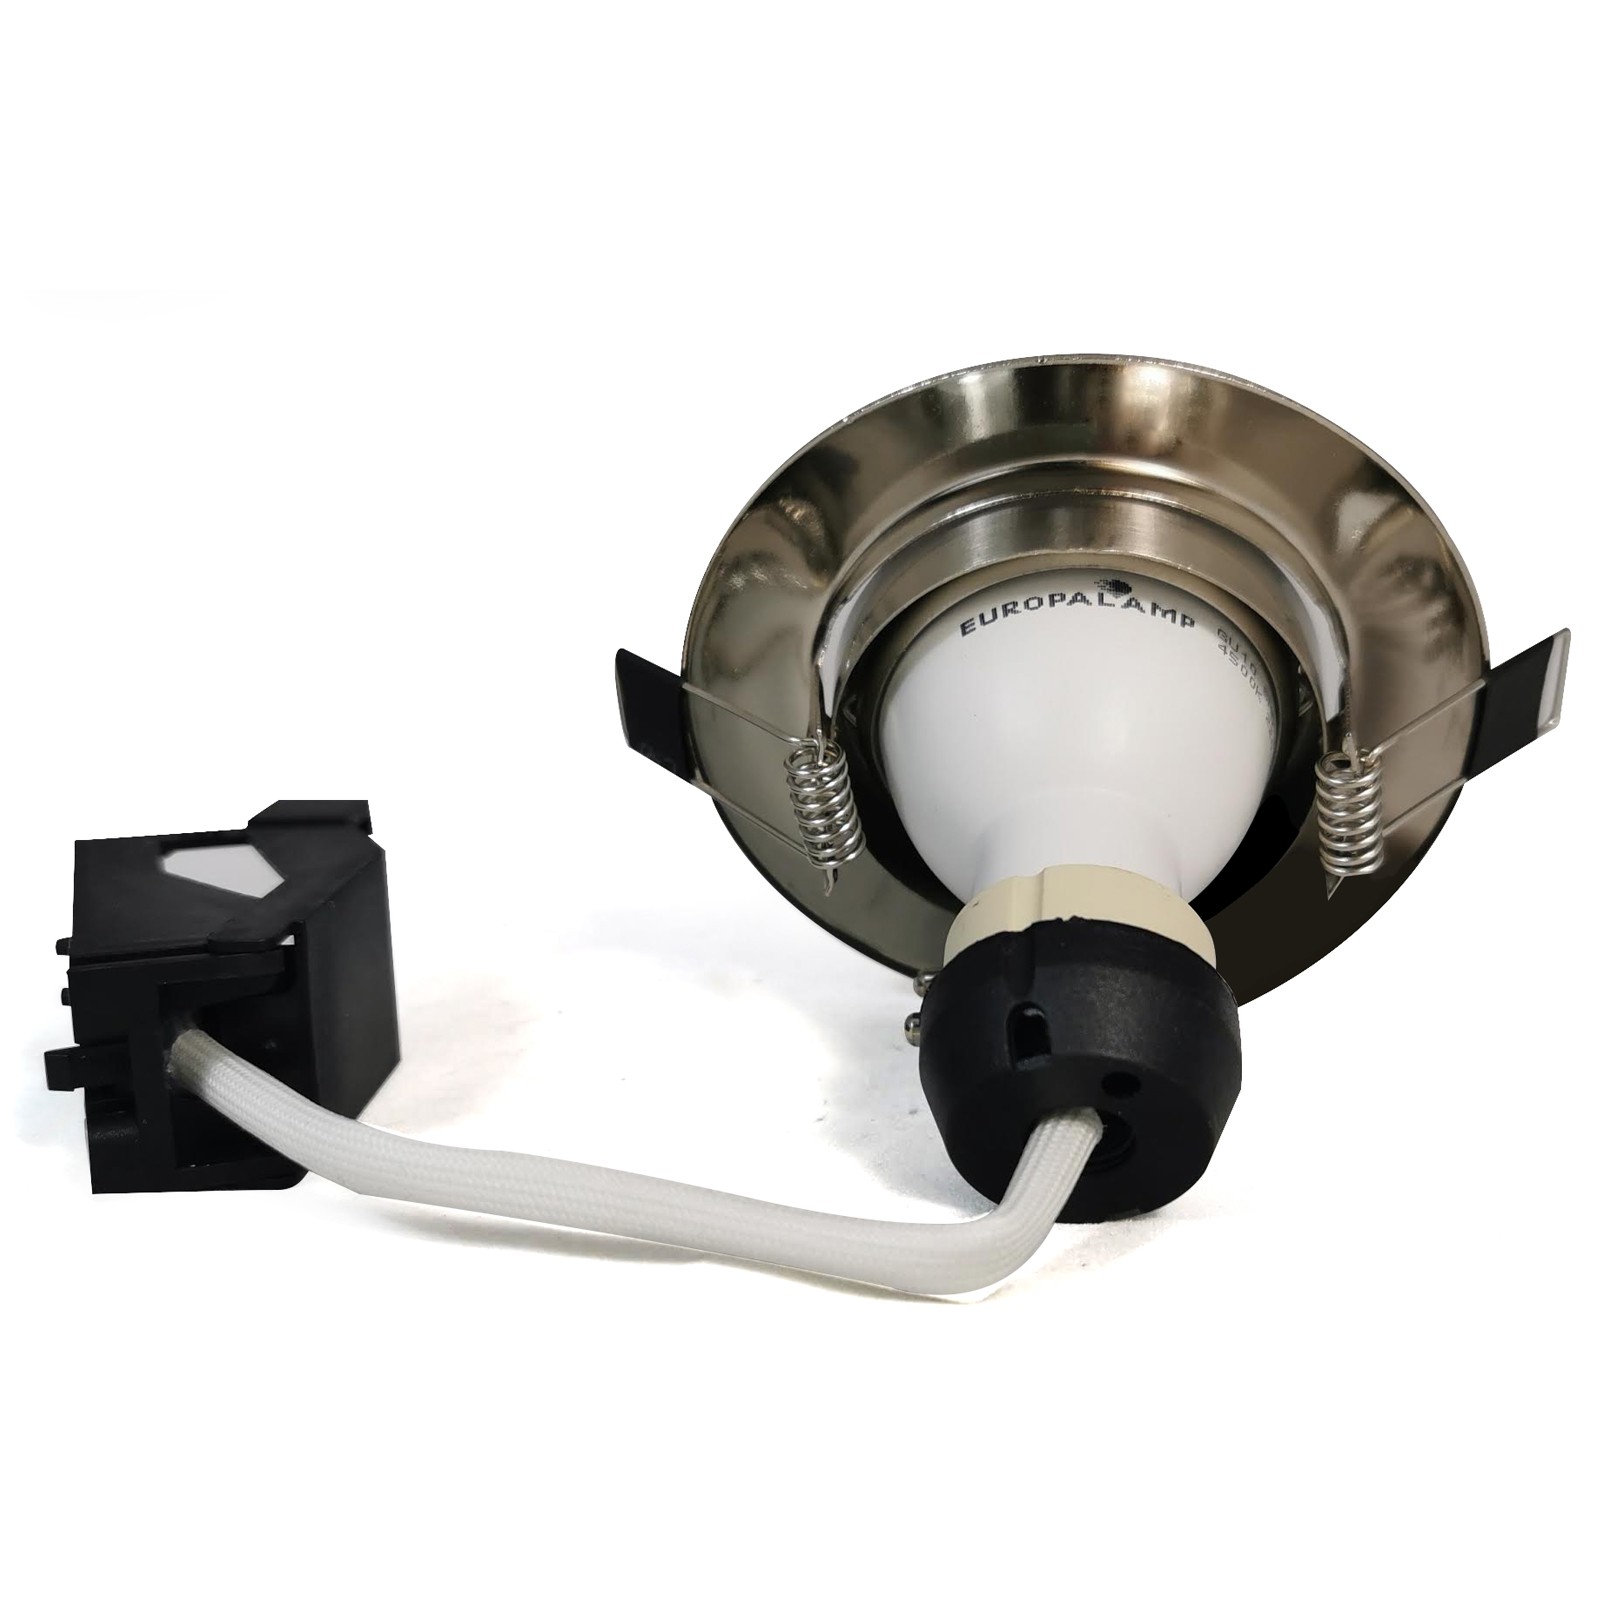 Kit Spot LED Encastrable + Ampoule LED GU10 5W Blanc Chaud + Douille GU10